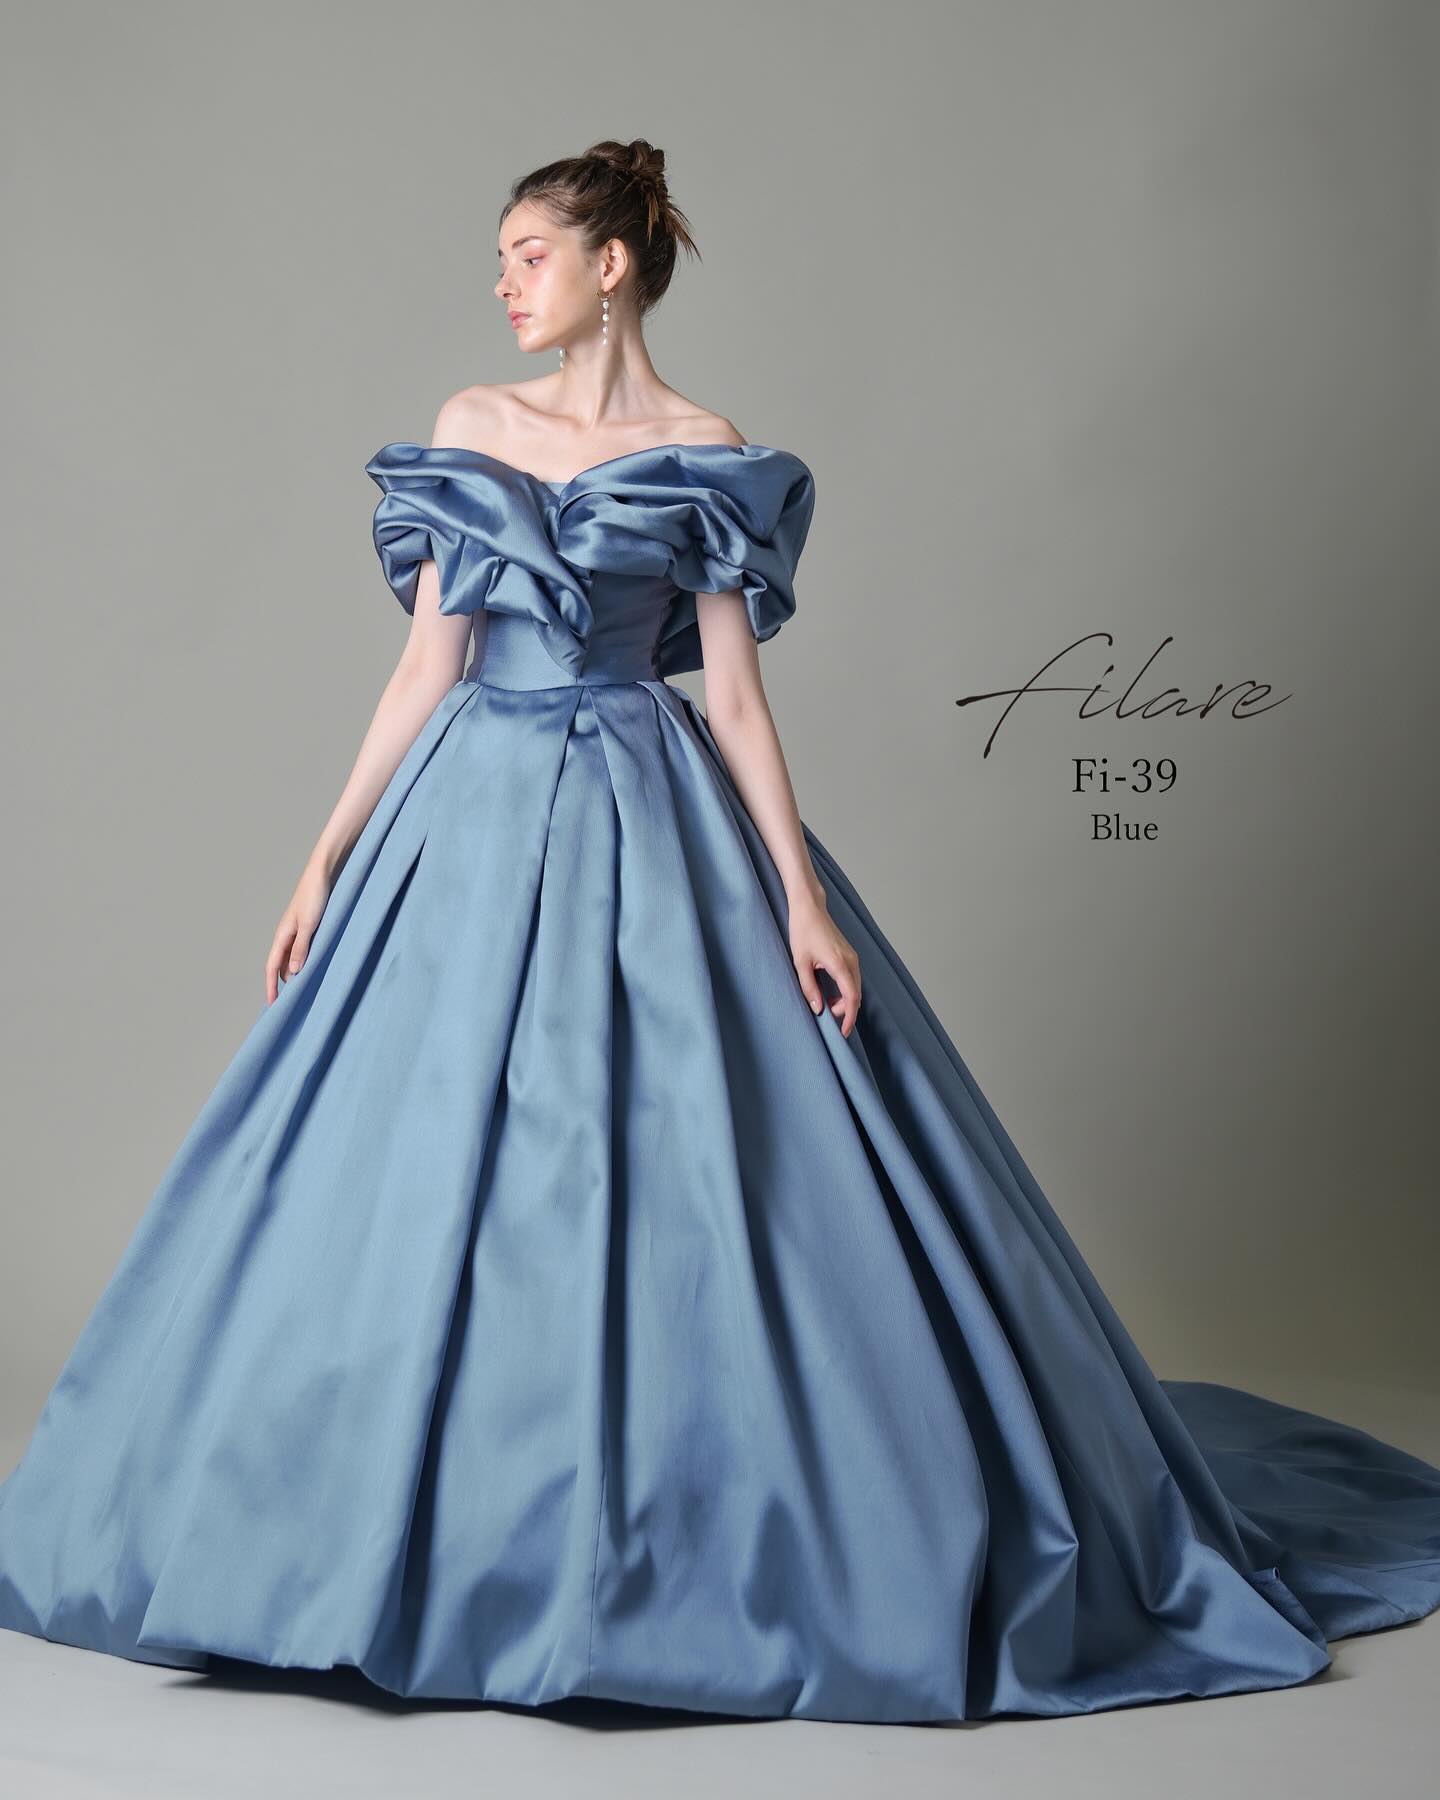 ・本日はカラードレスのご紹介ですカラードレス 【Filare】CD0584　【Fi-39】上品な色の発色、光沢感が美しいフランス製ジャガードを贅沢に使用したカラードレスです。 ジャガード織のふっくらとした風合いを活かした腰から丸みを帯びたボリュームシルエットが、シンプルなデザインながら目を惹く華やかさです。 付属のボリューミーなオフショルダー袖を付けるとより印象的なお顔周りの演出が可能です。 別売りのタッキングを入れたボリューム袖を付けると個性的でオシャレな装いにもスタイルチェンジ可能です。レンタル料金￥286,000-ぜひお問い合わせ下さいませ・#wedding #weddingdress #bridalhiro #ウェディングドレス #プレ花嫁 #ドレス試着　　 #カップルフォト #ウェディングドレス探し #ウェディングドレス試着　#ブライダルヒロ #ゼクシィ #プリンセスライン #ドレス迷子